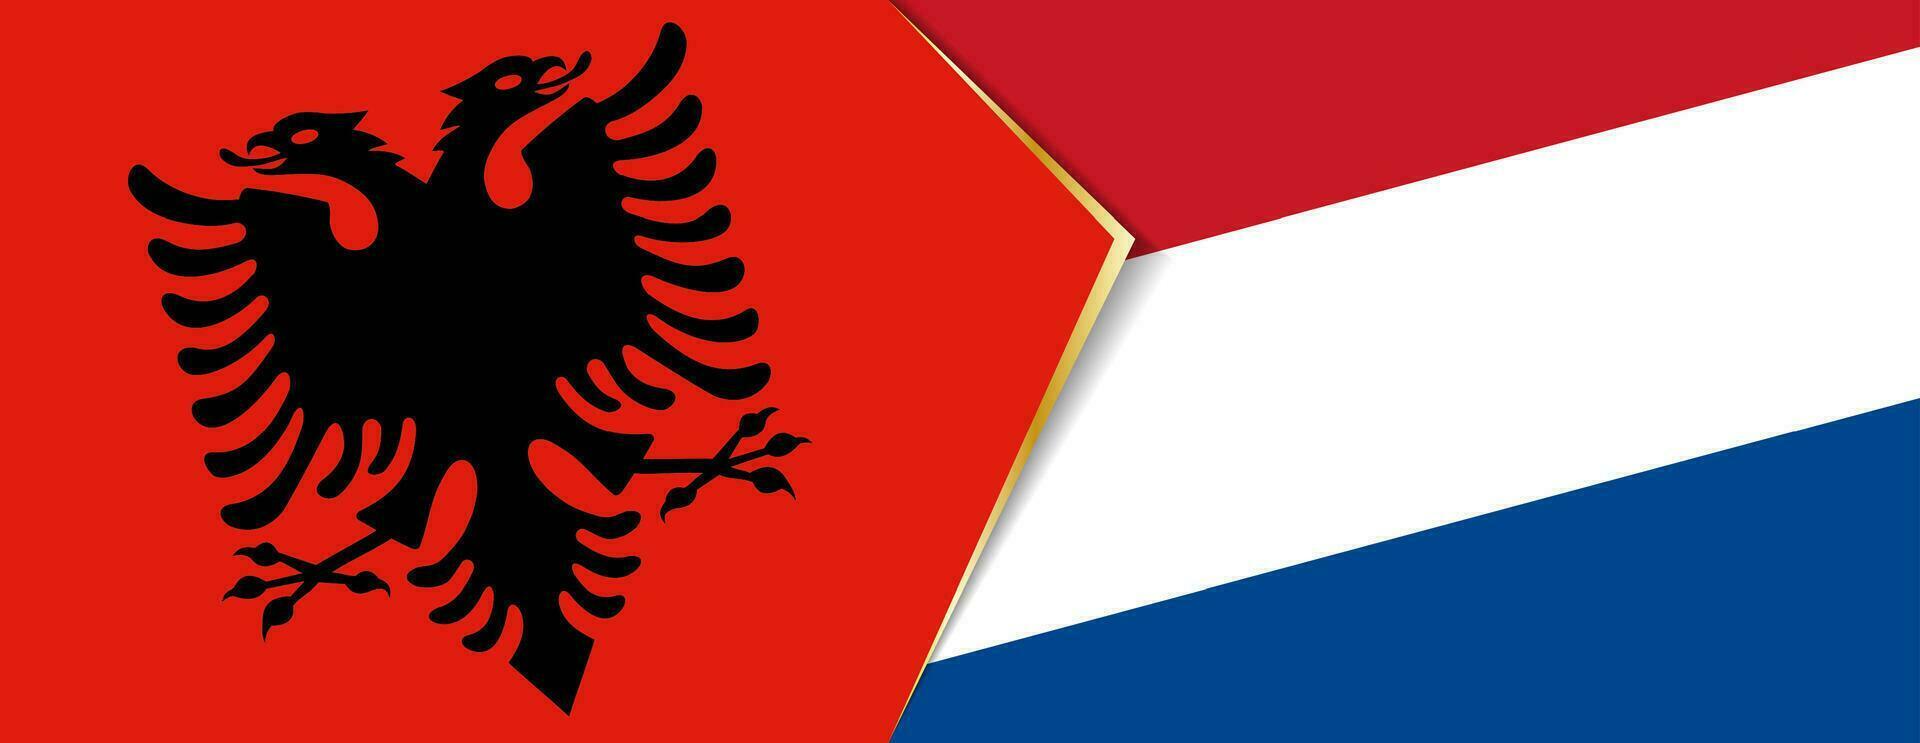 Albania y Países Bajos banderas, dos vector banderas